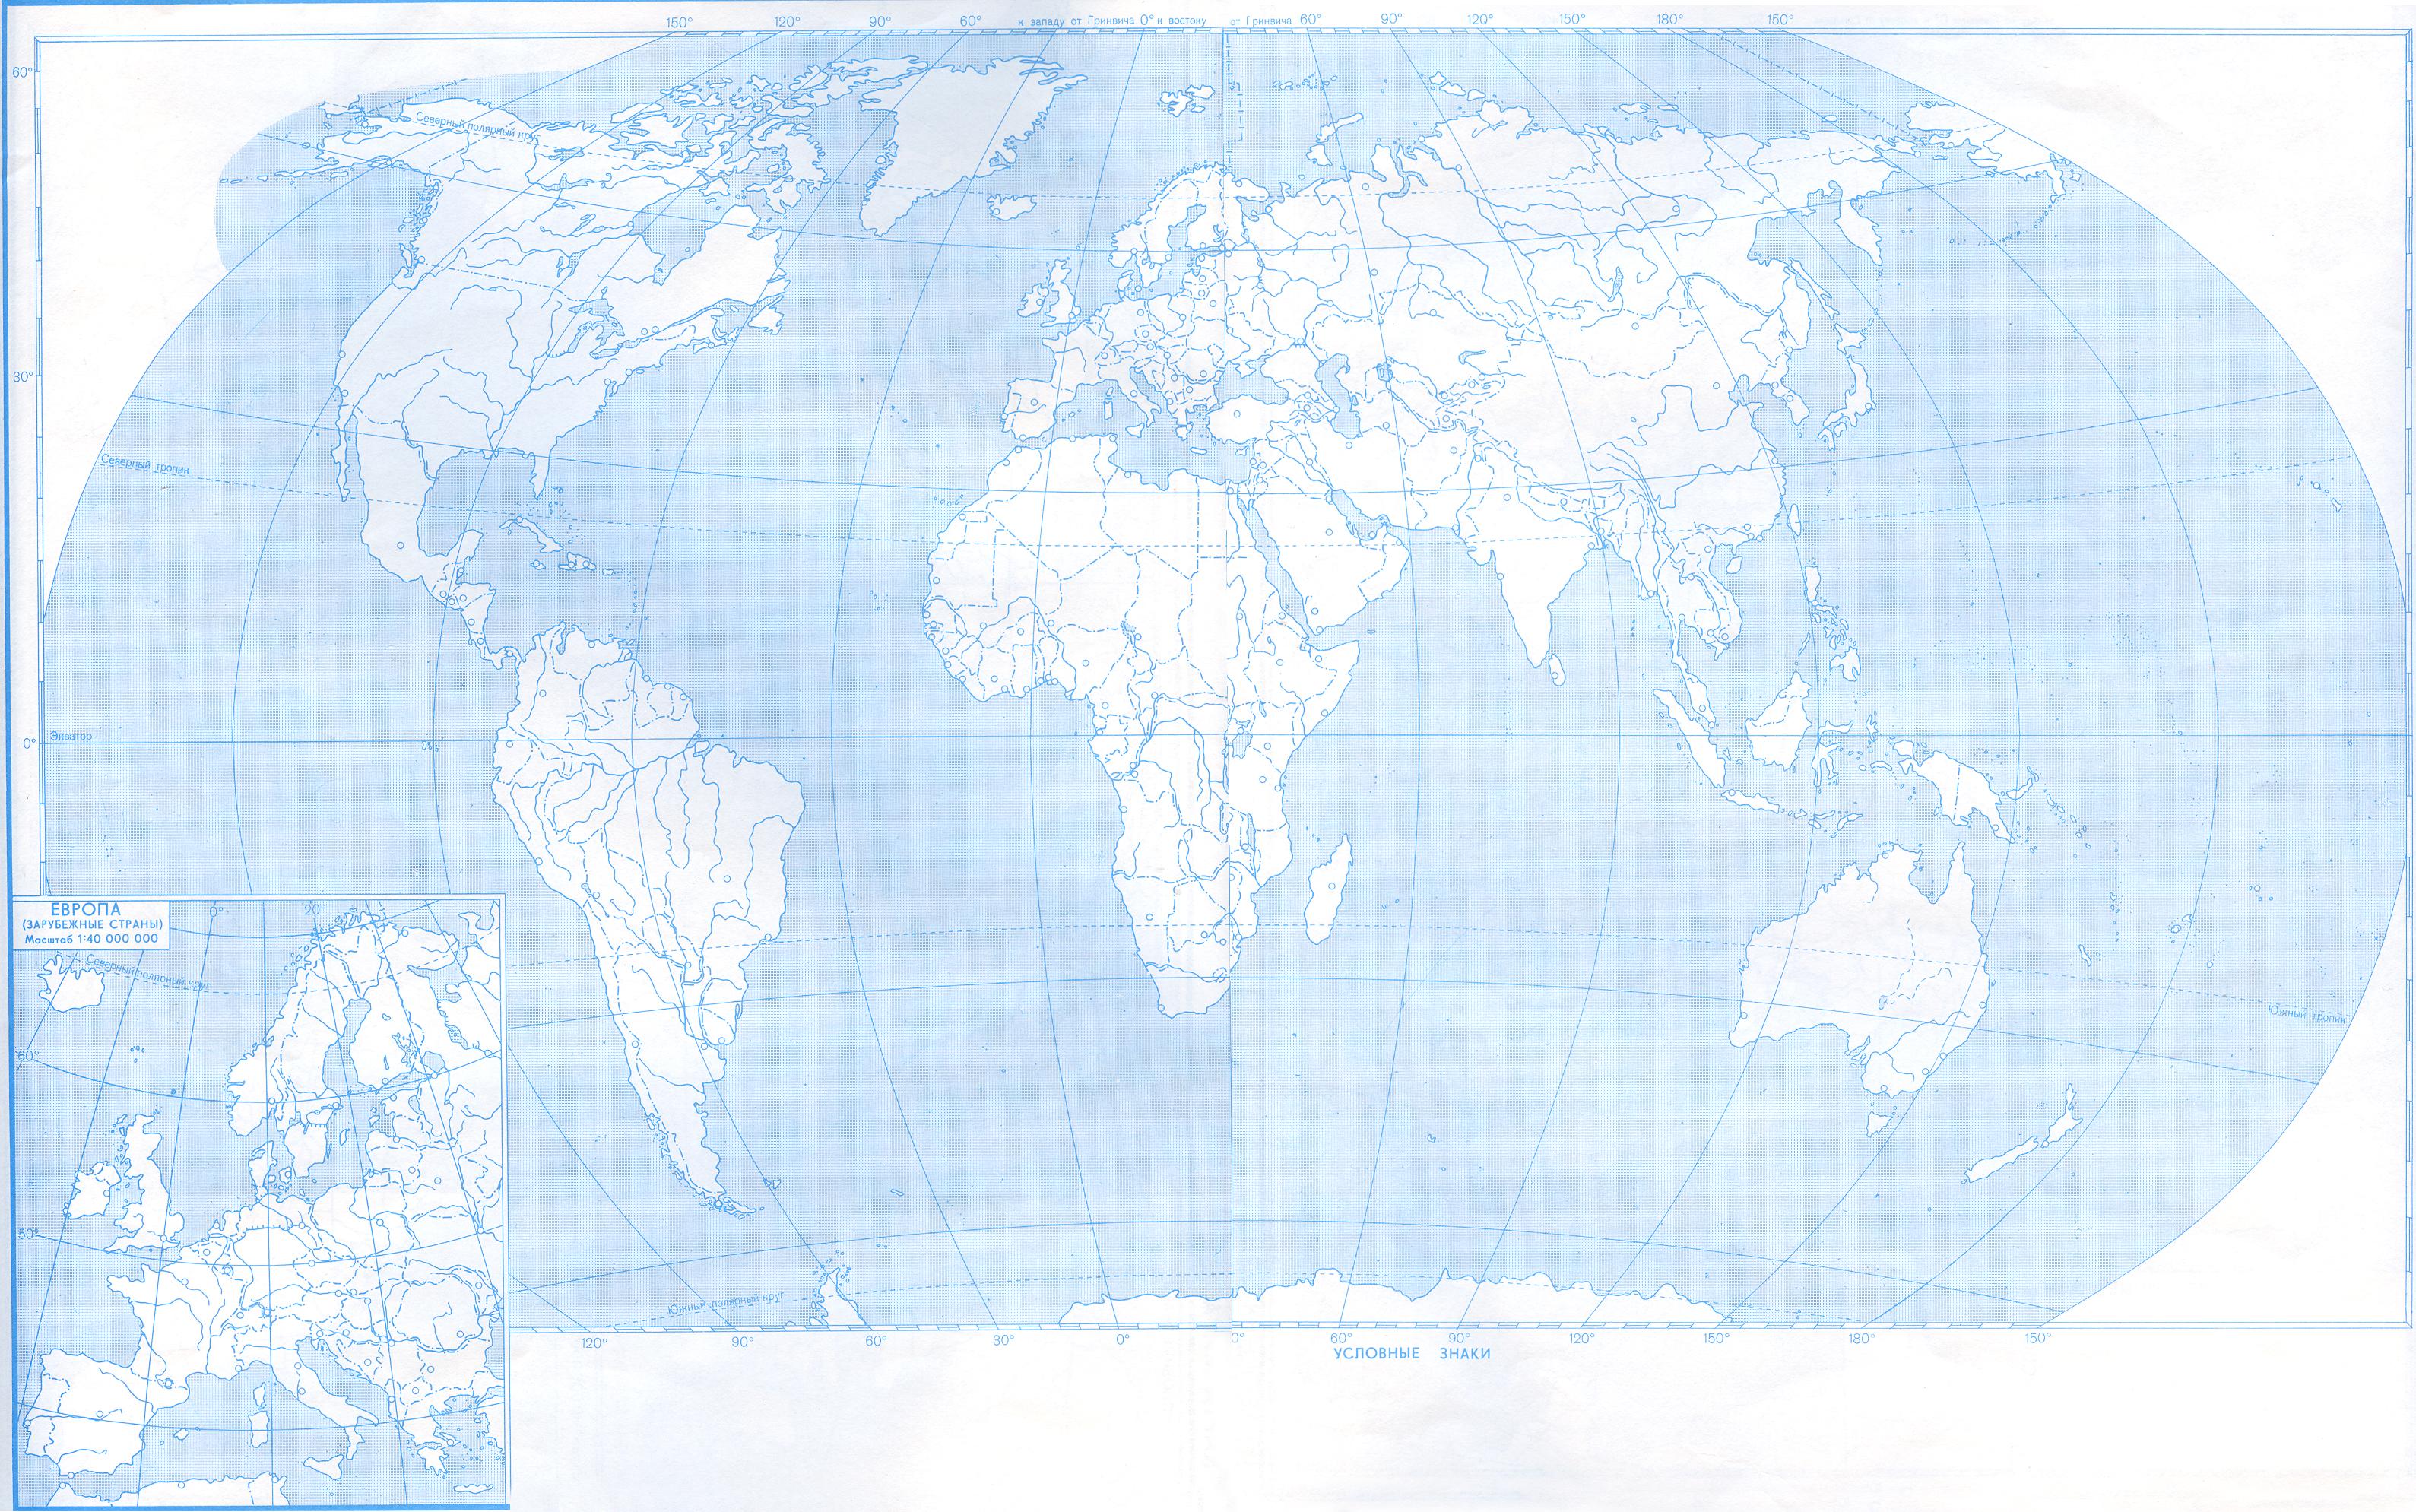 Контурная карта мира